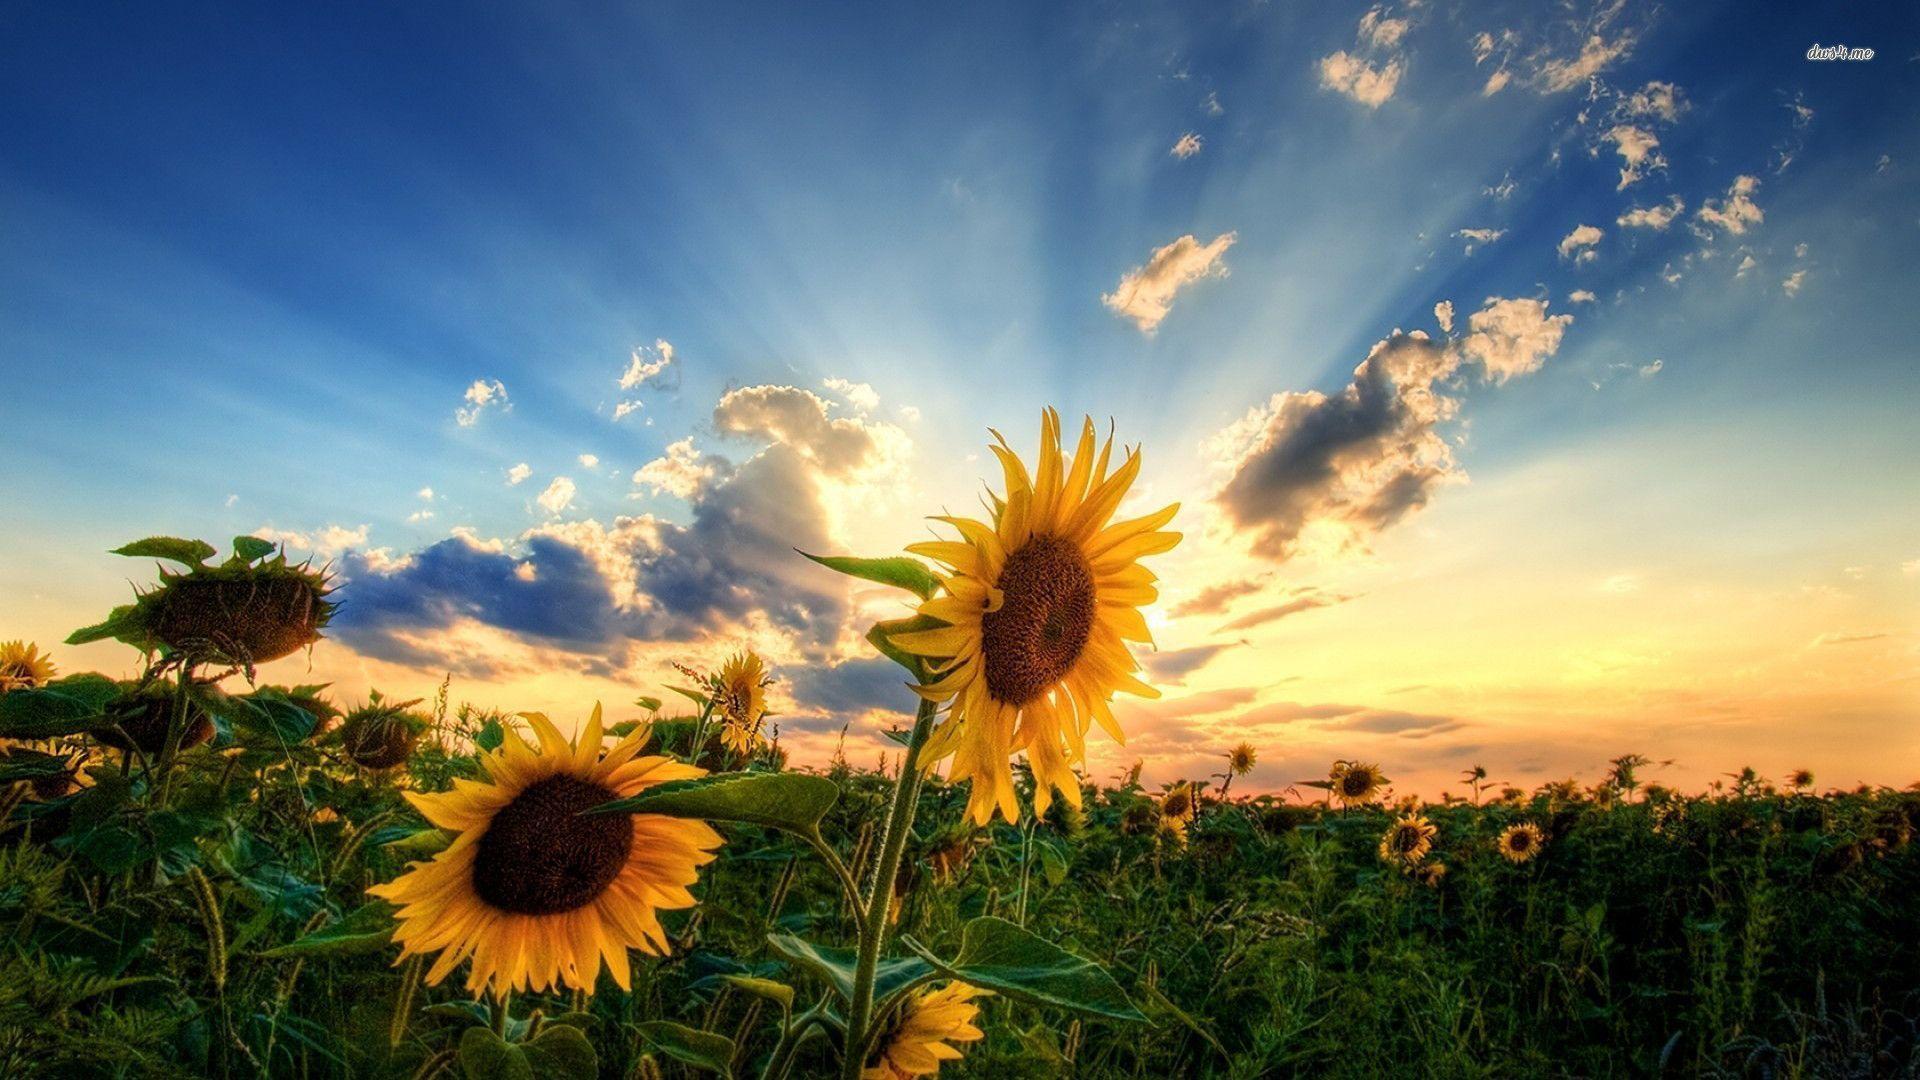 Sunflowers wallpapers: Bức ảnh hình nền hoa hướng dương sẽ đem lại cho bạn một màn hình máy tính đầy tươi sáng và đầy năng lượng. Nhìn vào những bông hoa hướng dương toả nắng vàng lấp lánh trên màn hình, bạn sẽ cảm thấy tràn đầy sức sống và cảm hứng trong công việc và cuộc sống. Hãy trang trí màn hình của mình với những hình nền hoa hướng dương để nhận lại năng lượng tích cực.